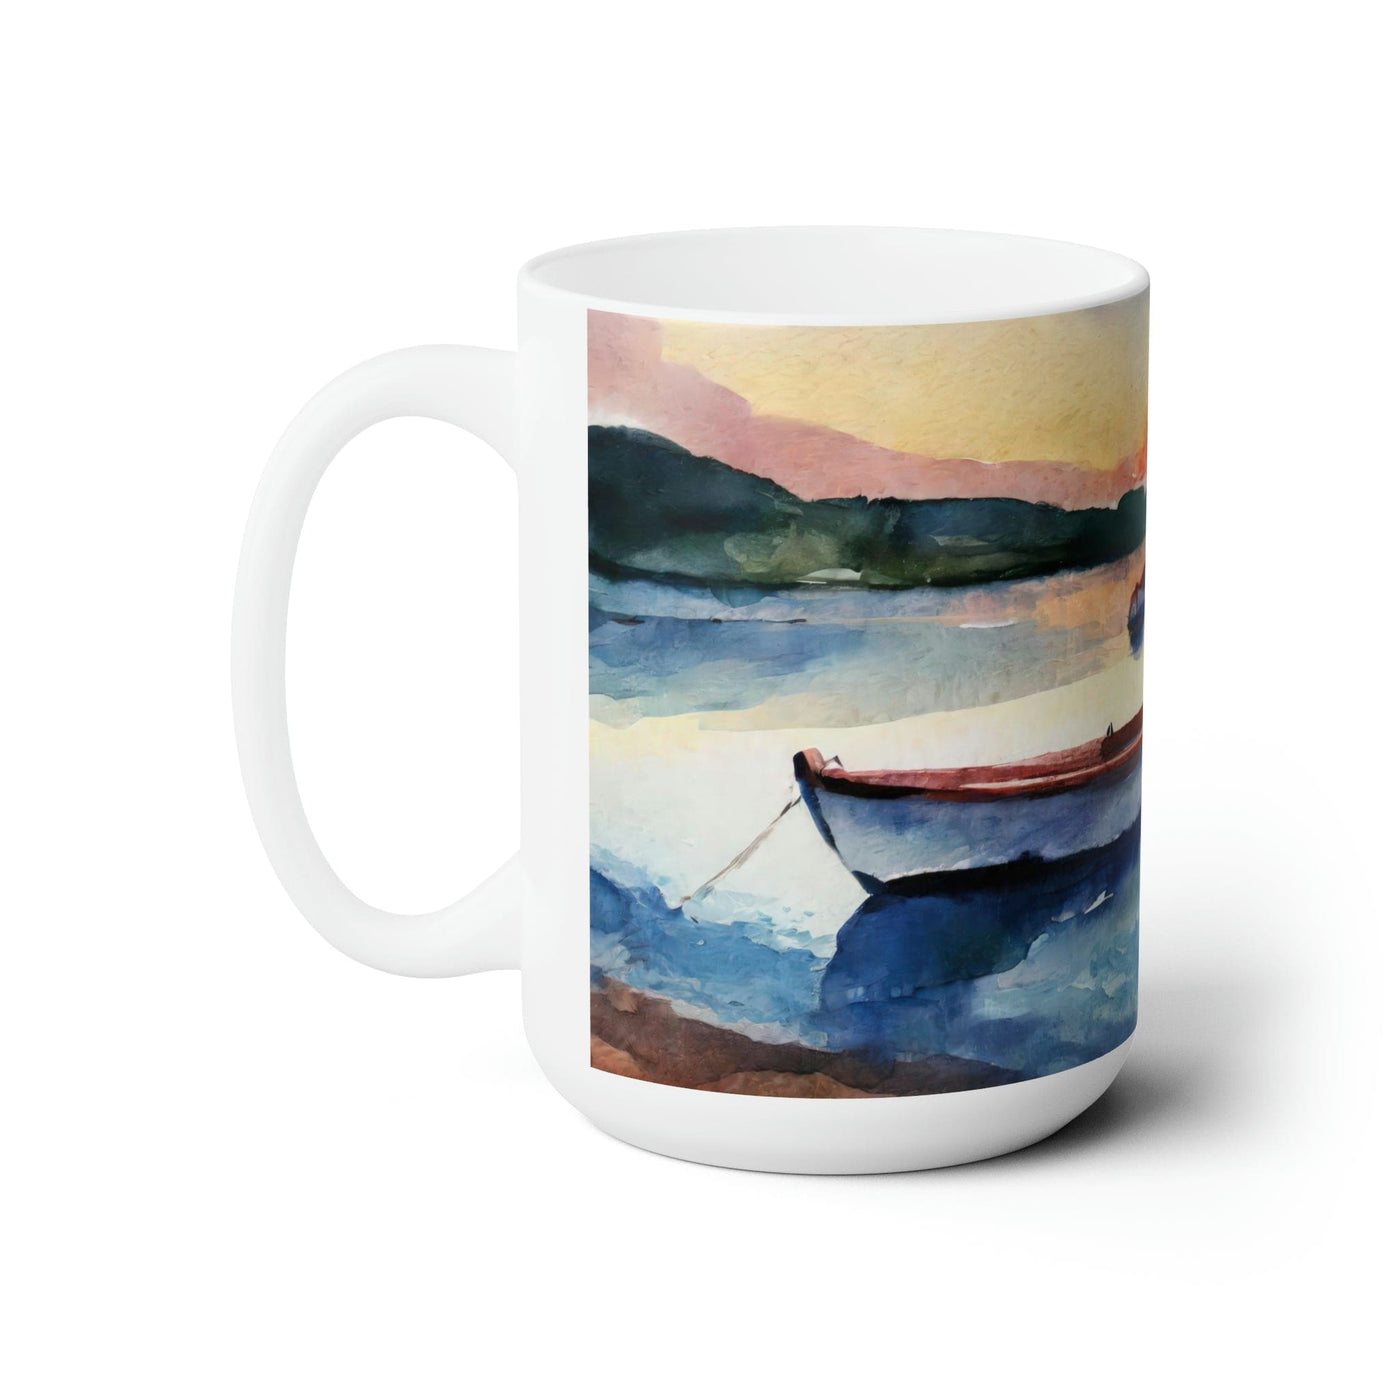 Ceramic Mug 15oz The Peace Of God - Echo Hope Illustration Decorative | Mugs